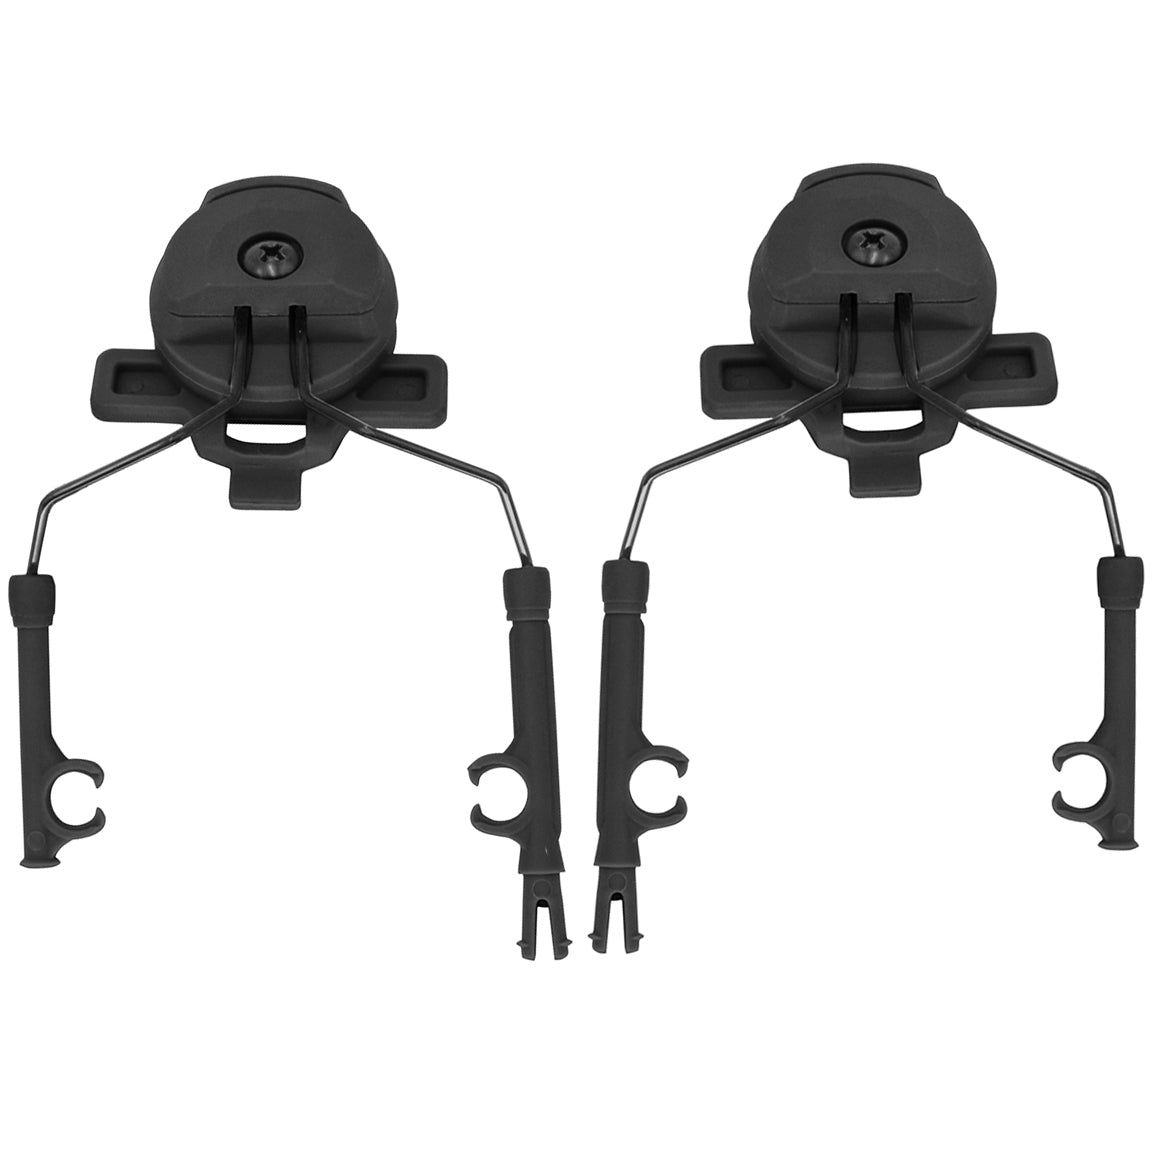 Team Wendy 3.0 Helmet Rail Headset Adapter for Peltor / Sordin / Walker's / Howard Leight